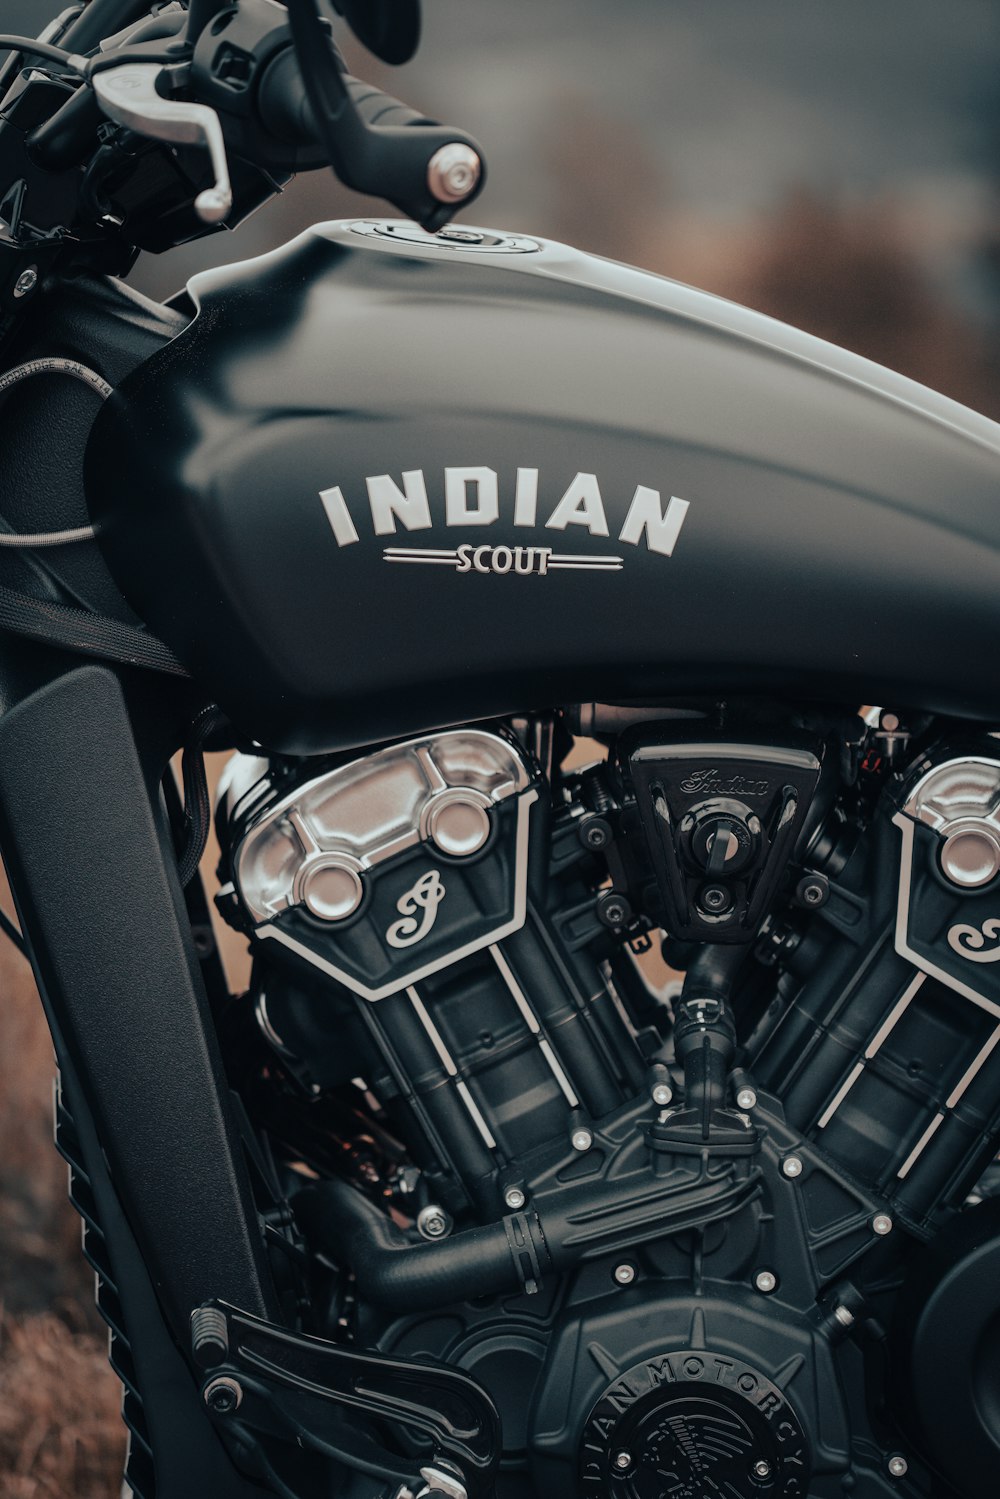 Una motocicleta Scout india negra estacionada en un campo